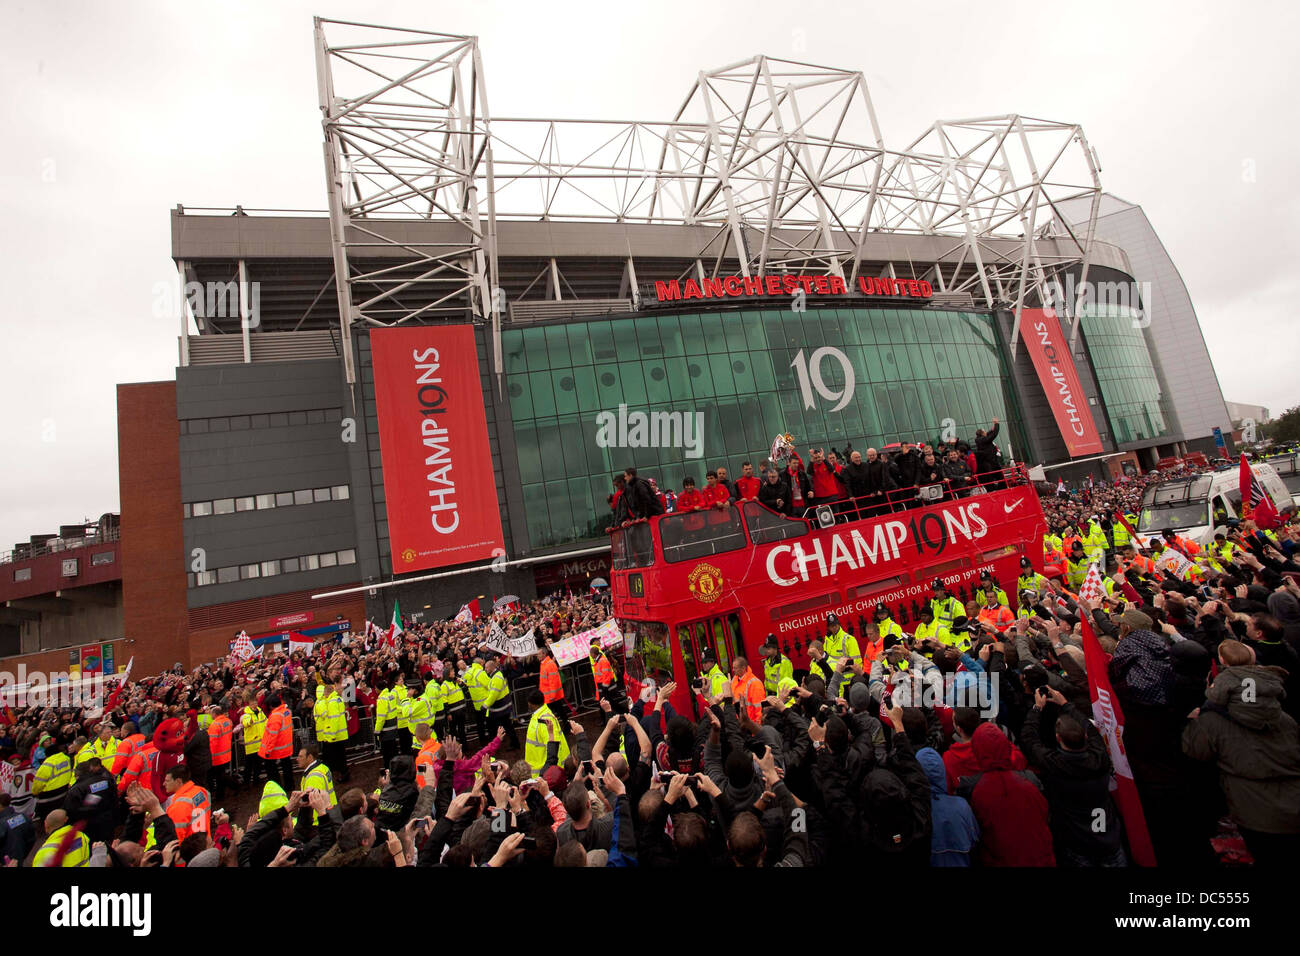 Manchester United Premier League saison 2010/11 la parade de la victoire Banque D'Images